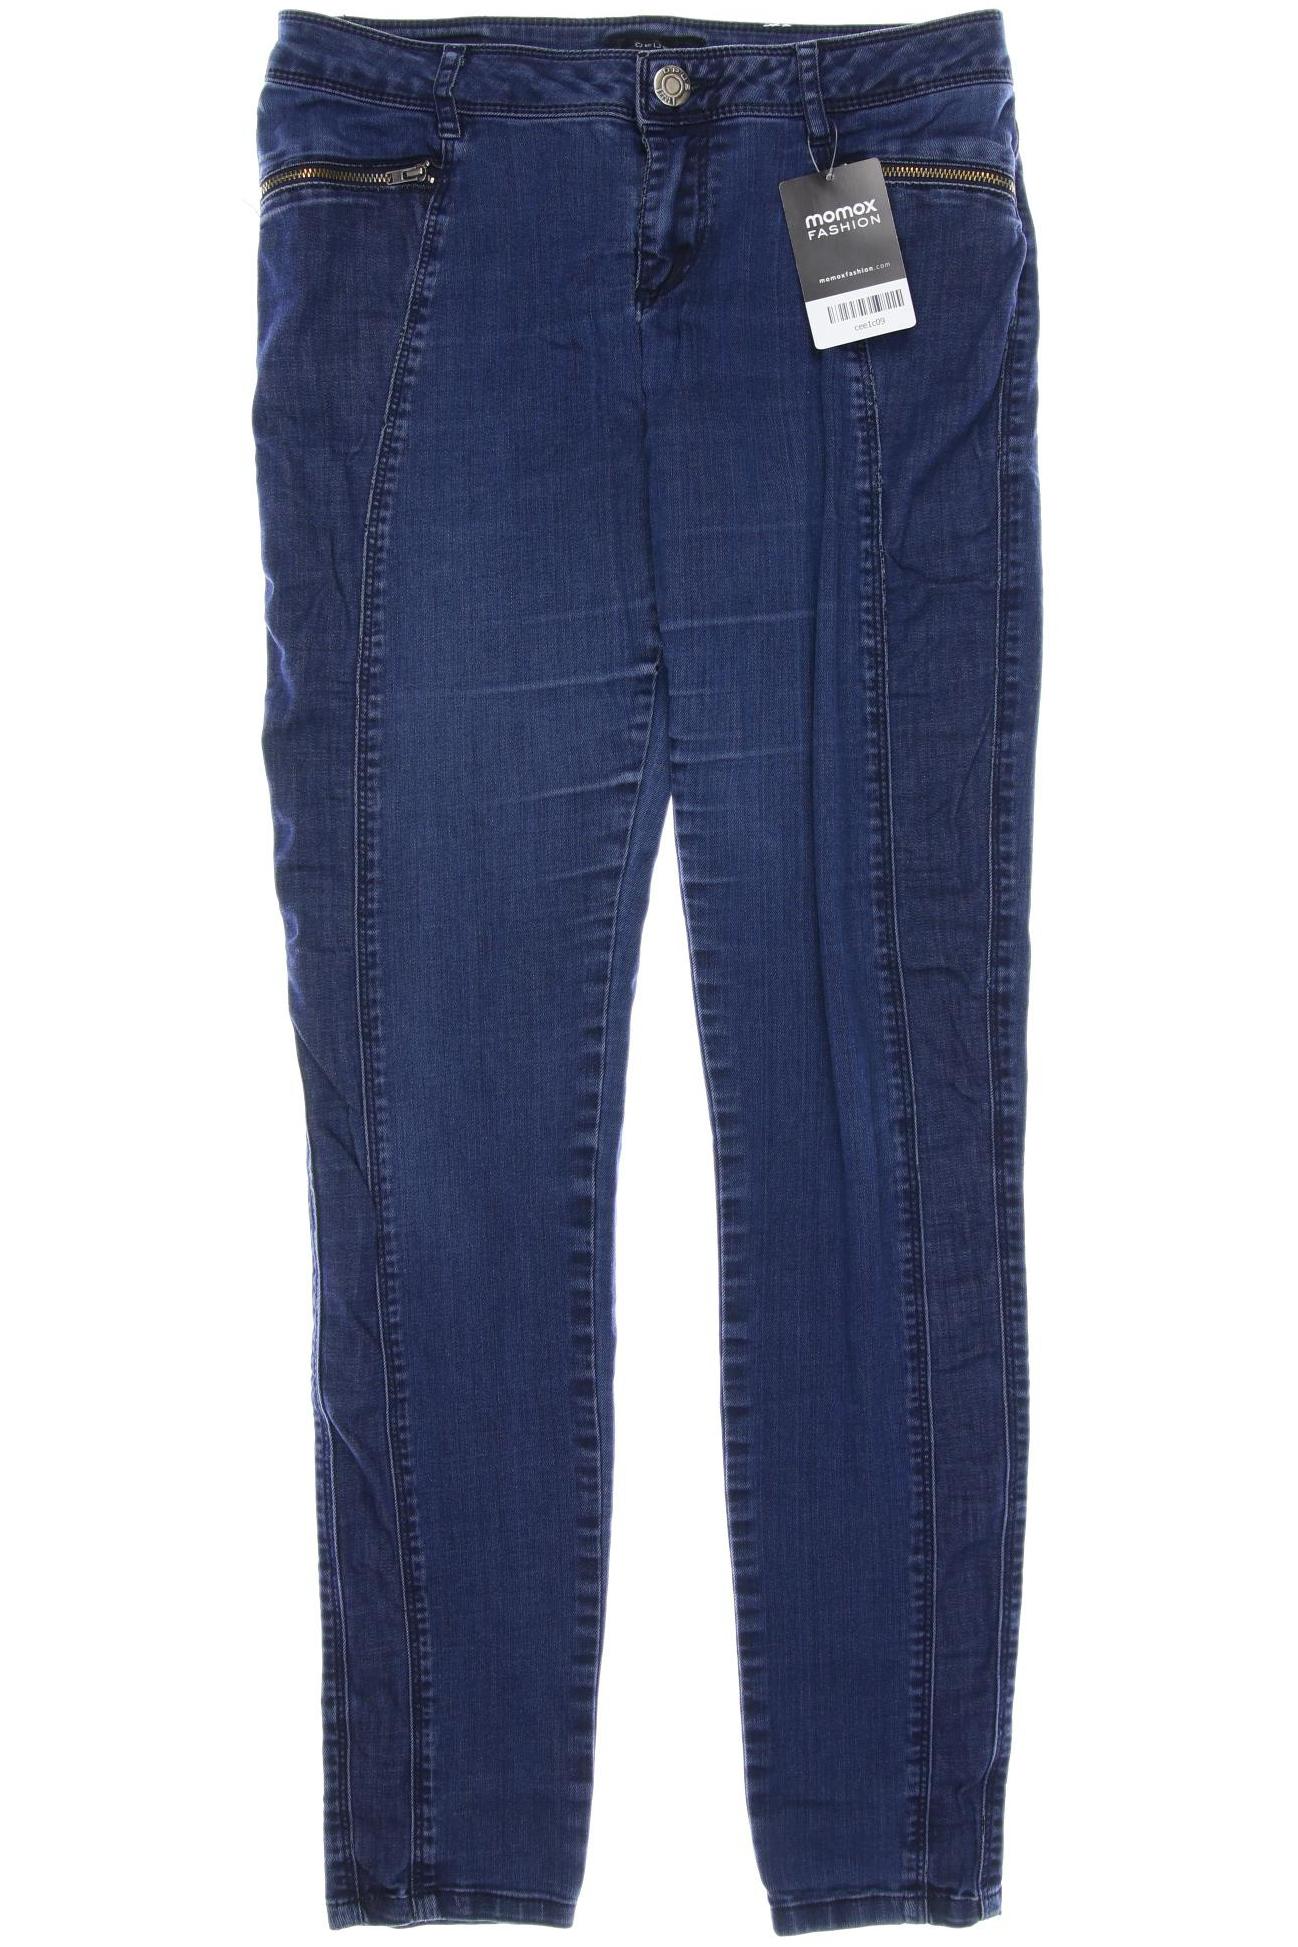 Opus Damen Jeans, blau von Opus